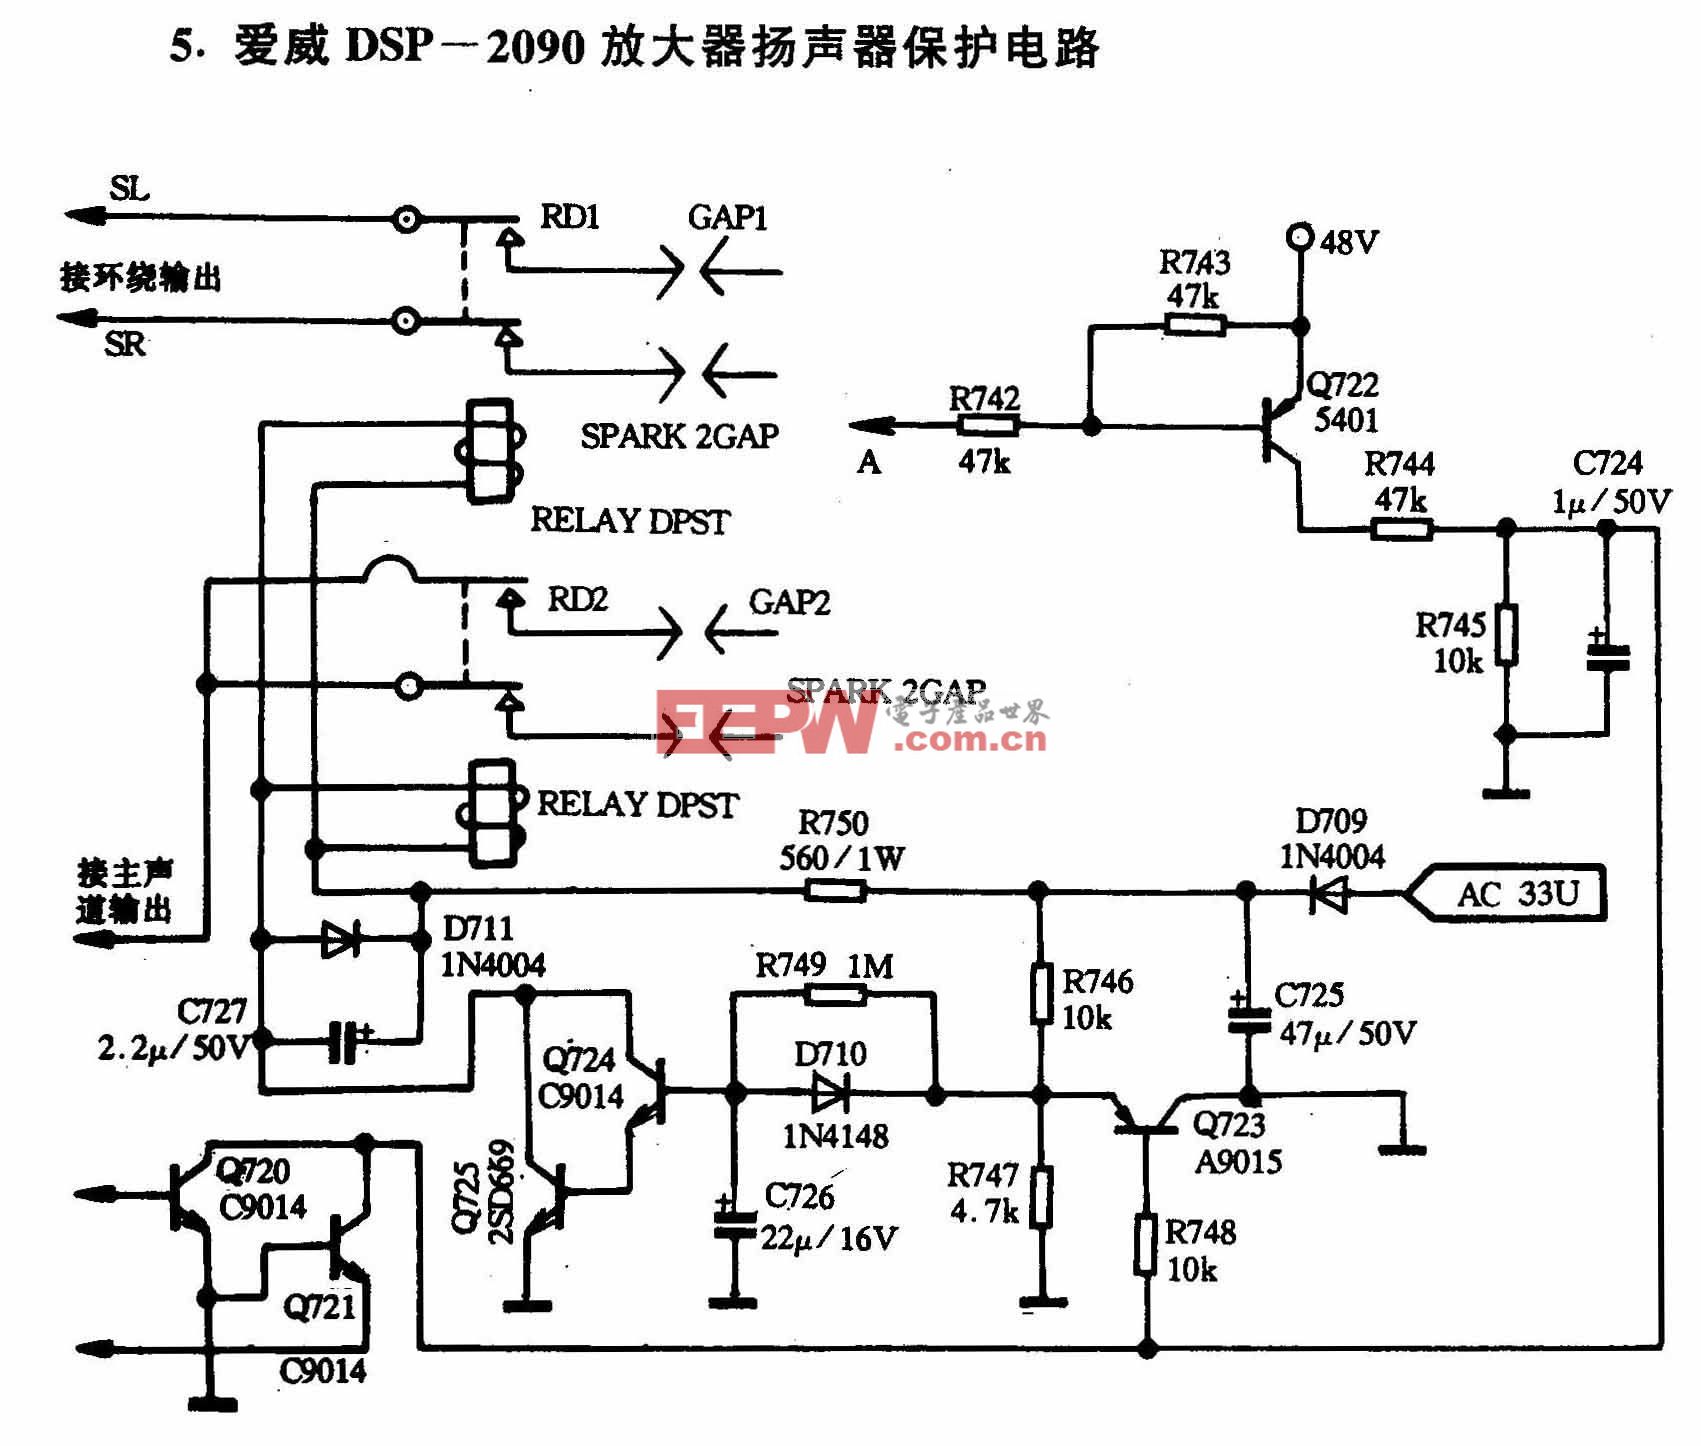 愛威-愛威DSP-2090放大器揚聲器保護電路